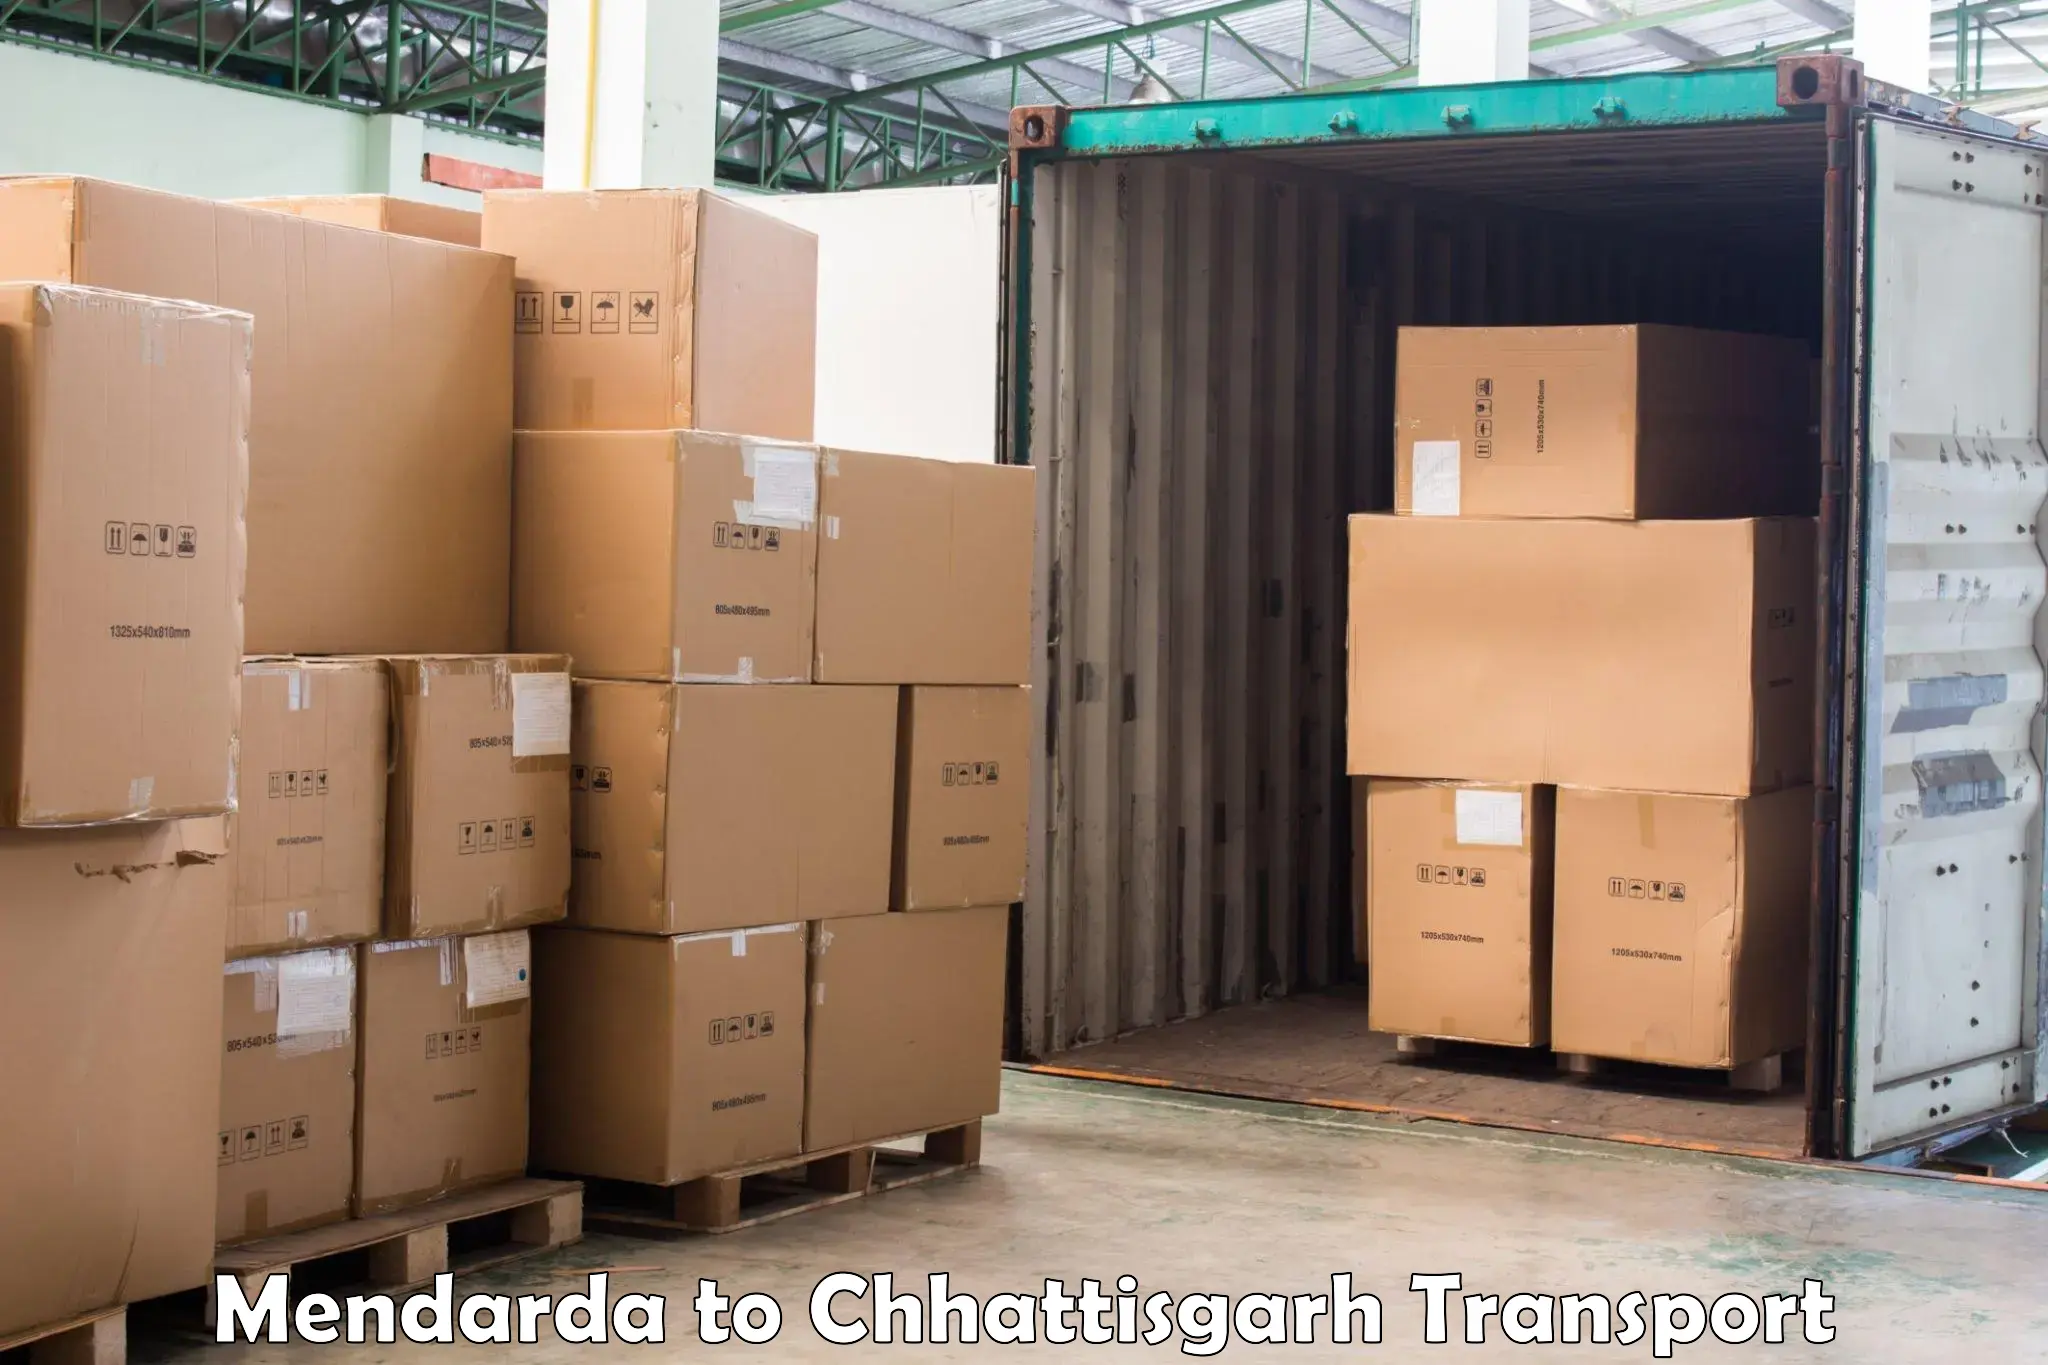 Cargo transport services Mendarda to Pakhanjur